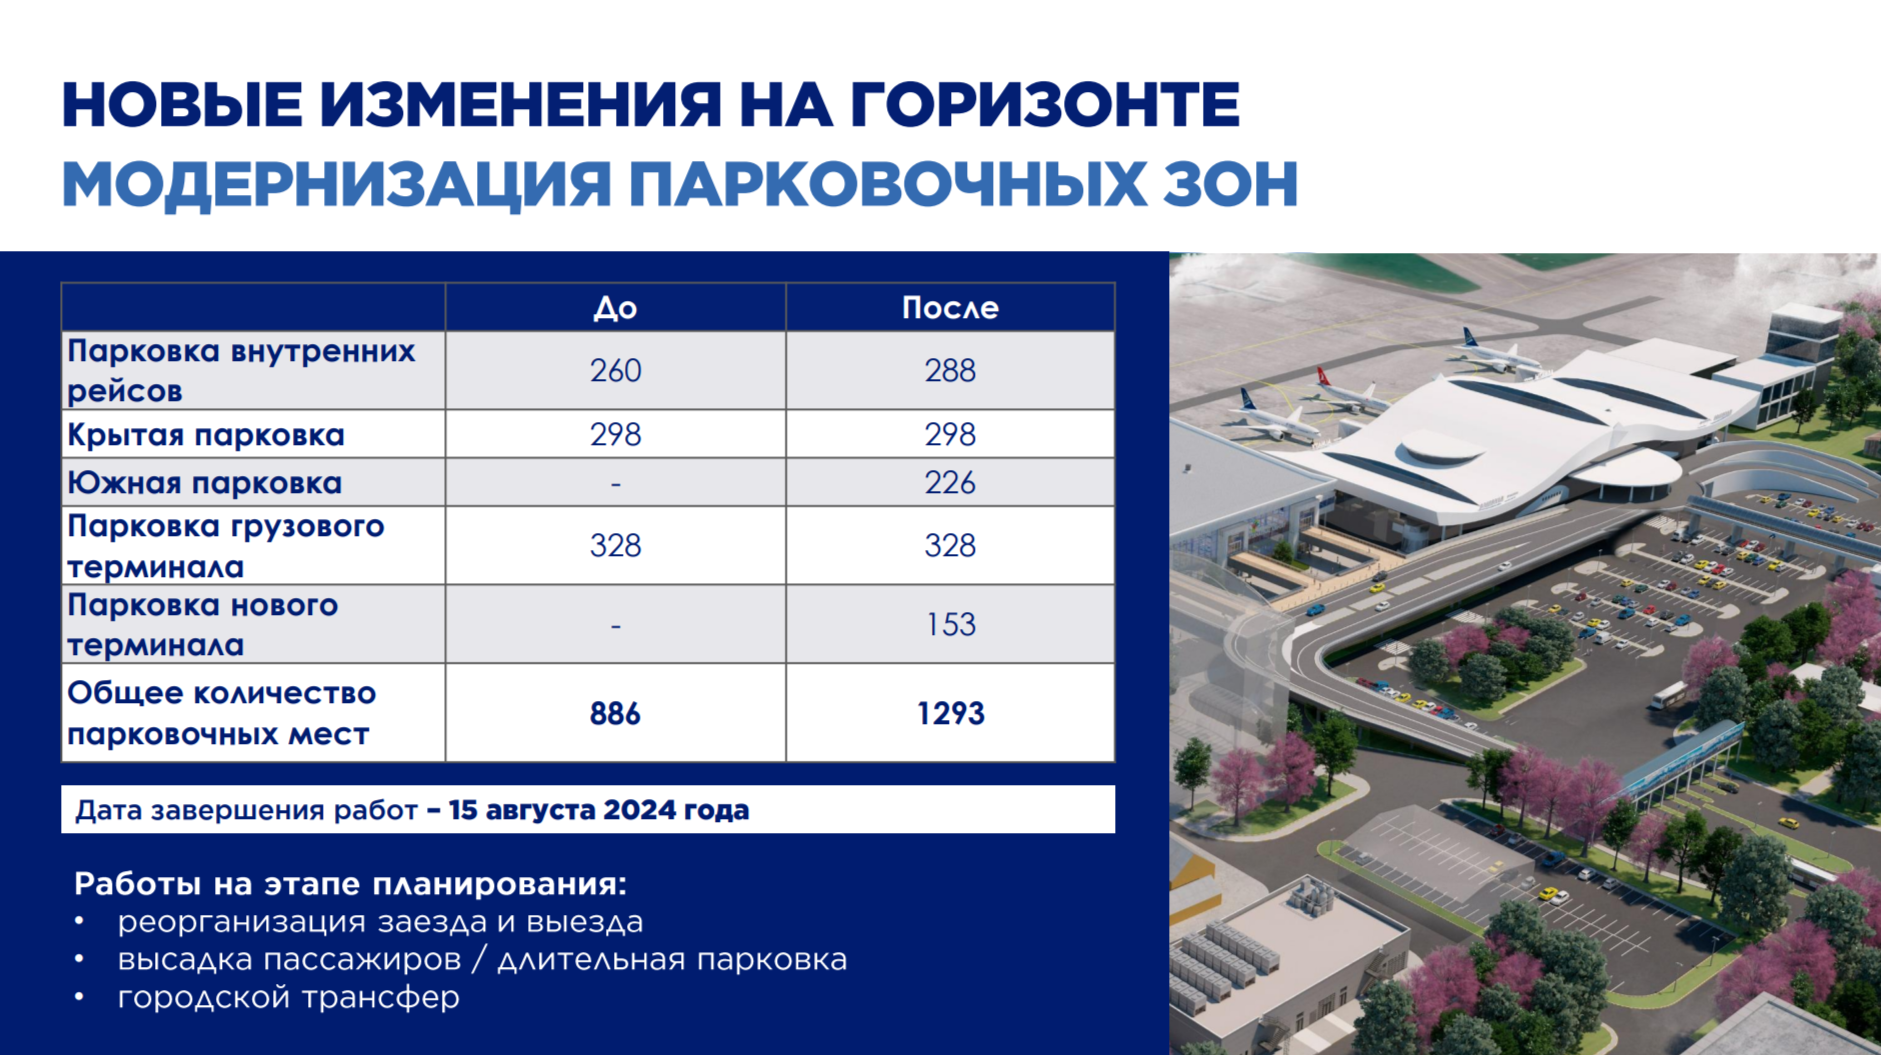 В новом терминале аэропорта Алматы 23% пассажиров использовали e-gate 3114932 — Kapital.kz 